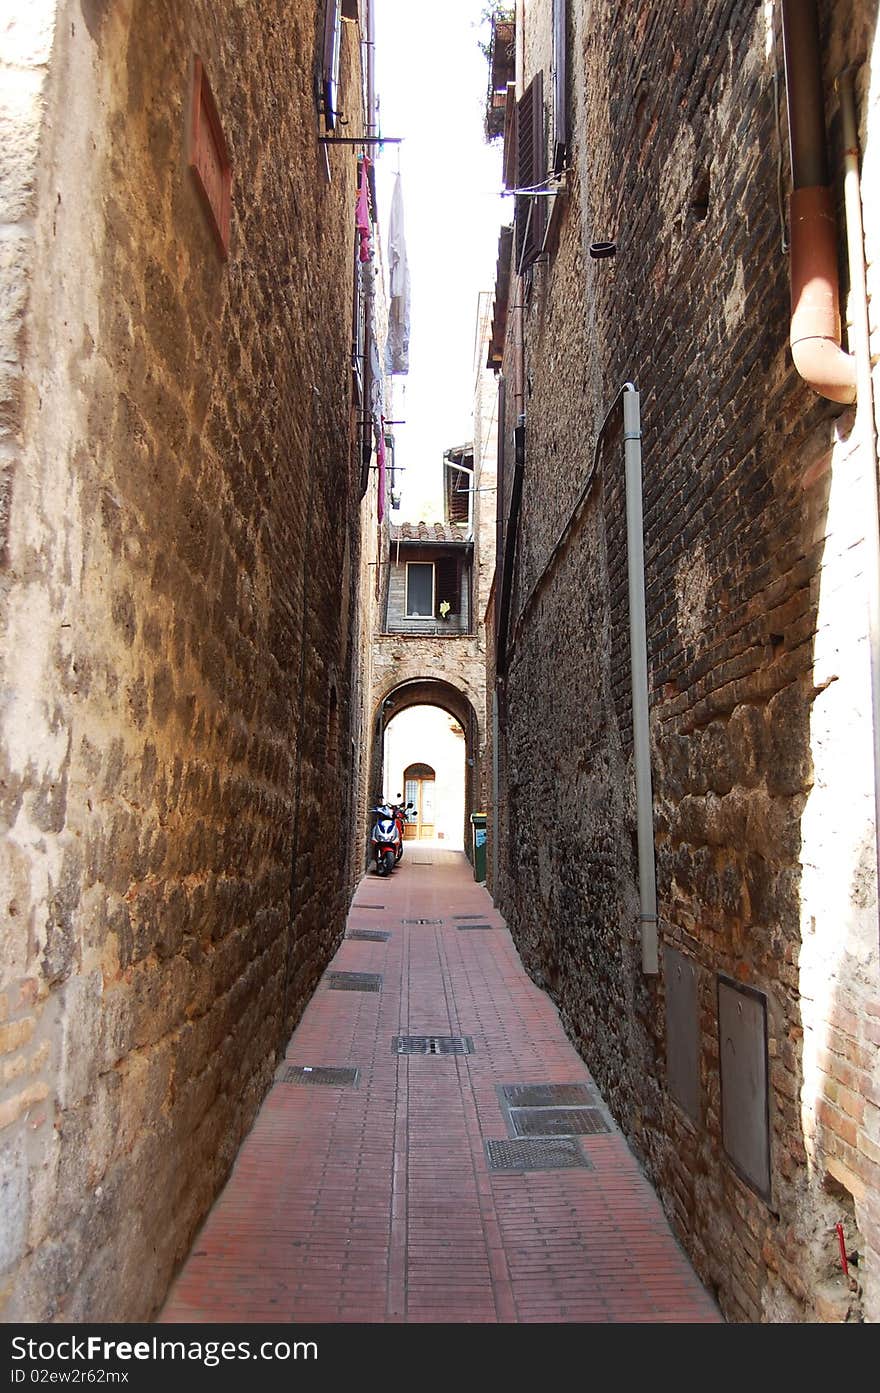 Narrow street in San Giminiano fortress, Tuscany, Italy